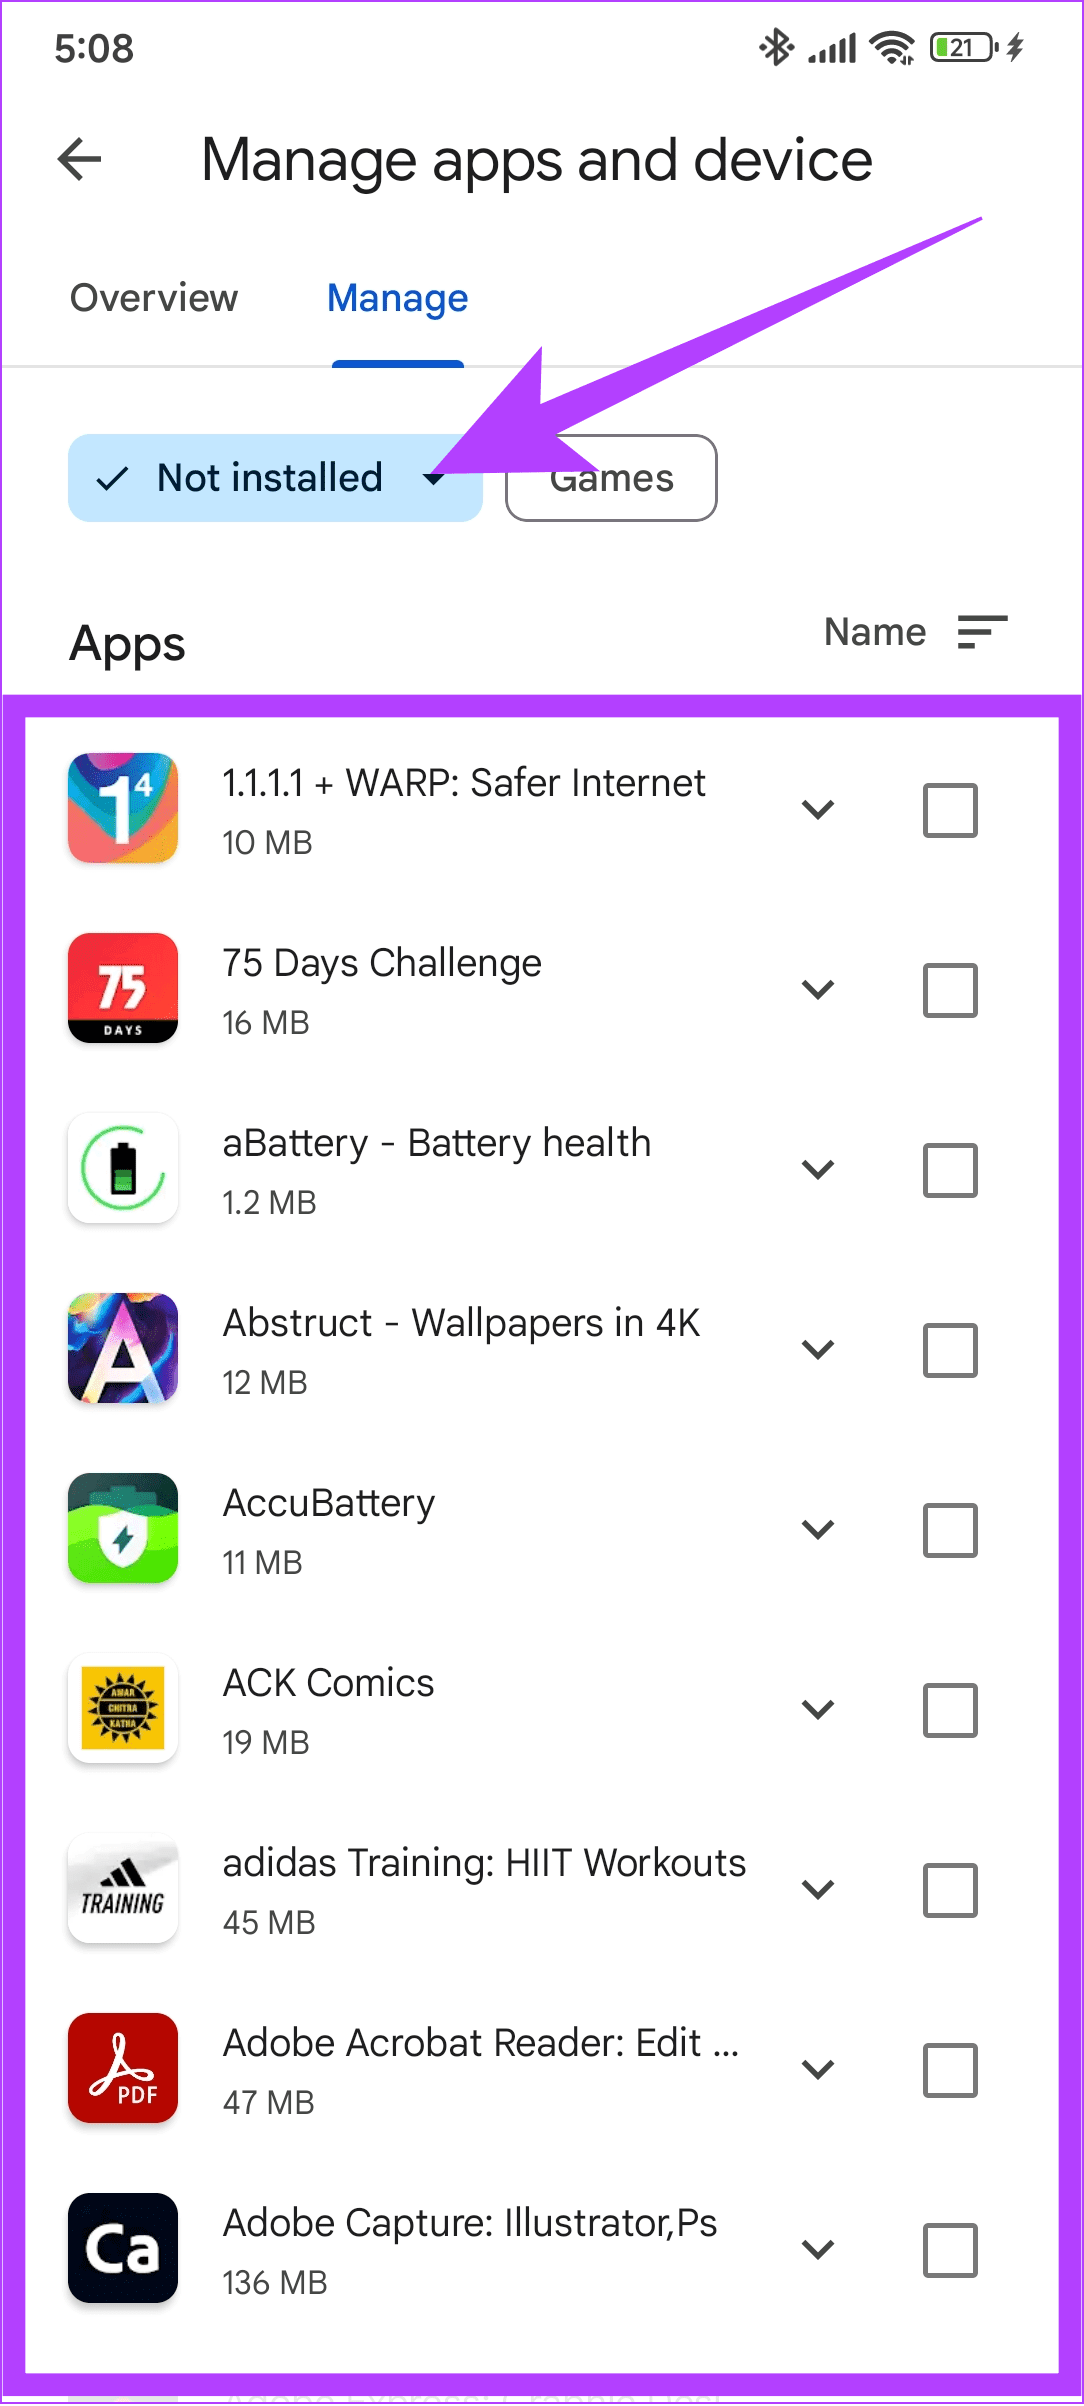 설치되지 않음을 선택한 다음 복원하려는 앱을 선택하세요.